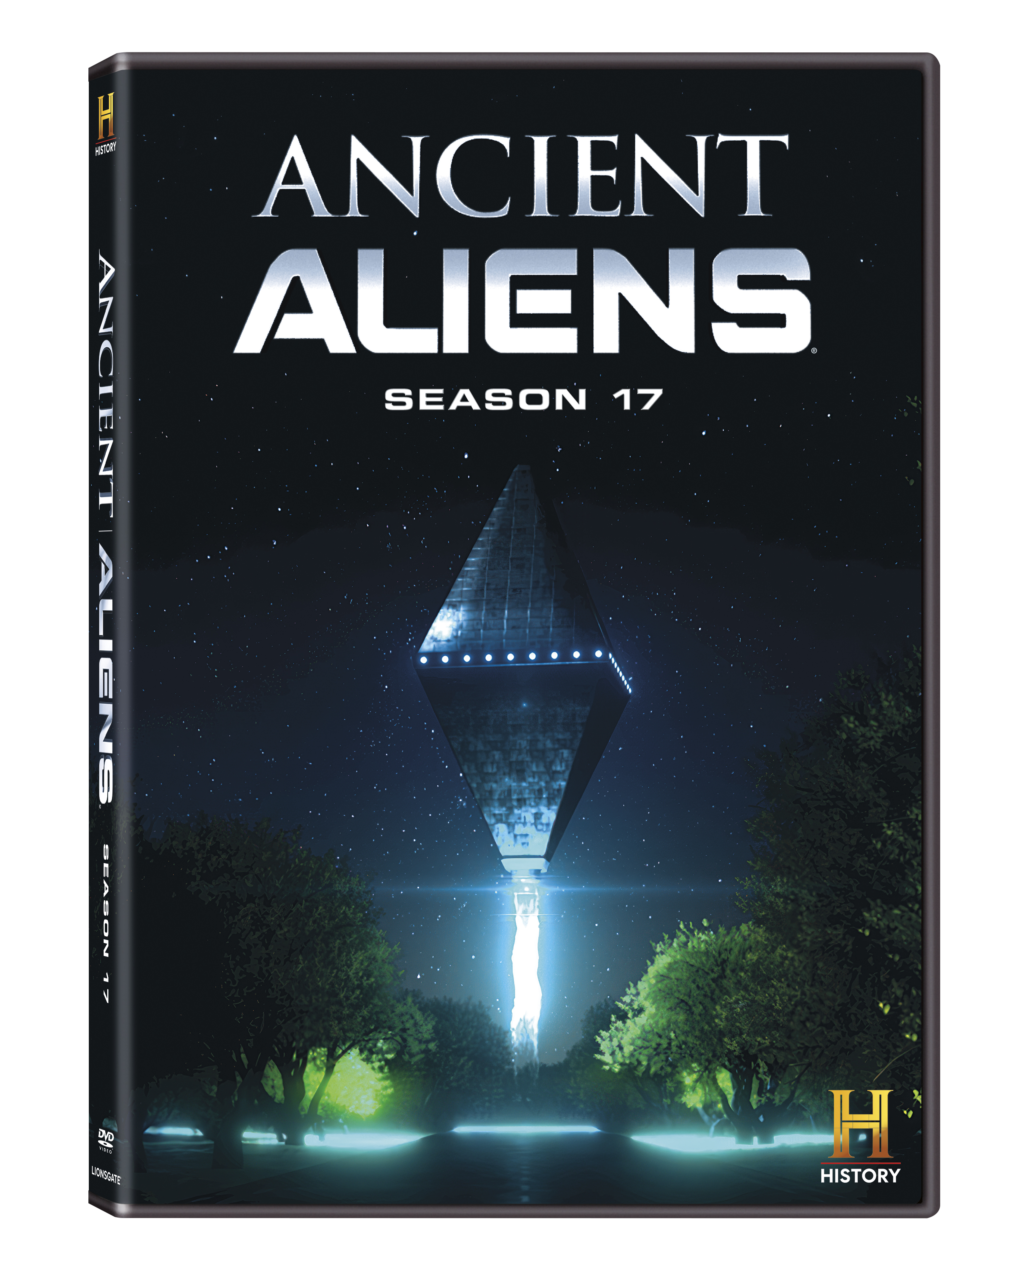 Ancient Aliens Season 17 DVD cover (Lionsgate)